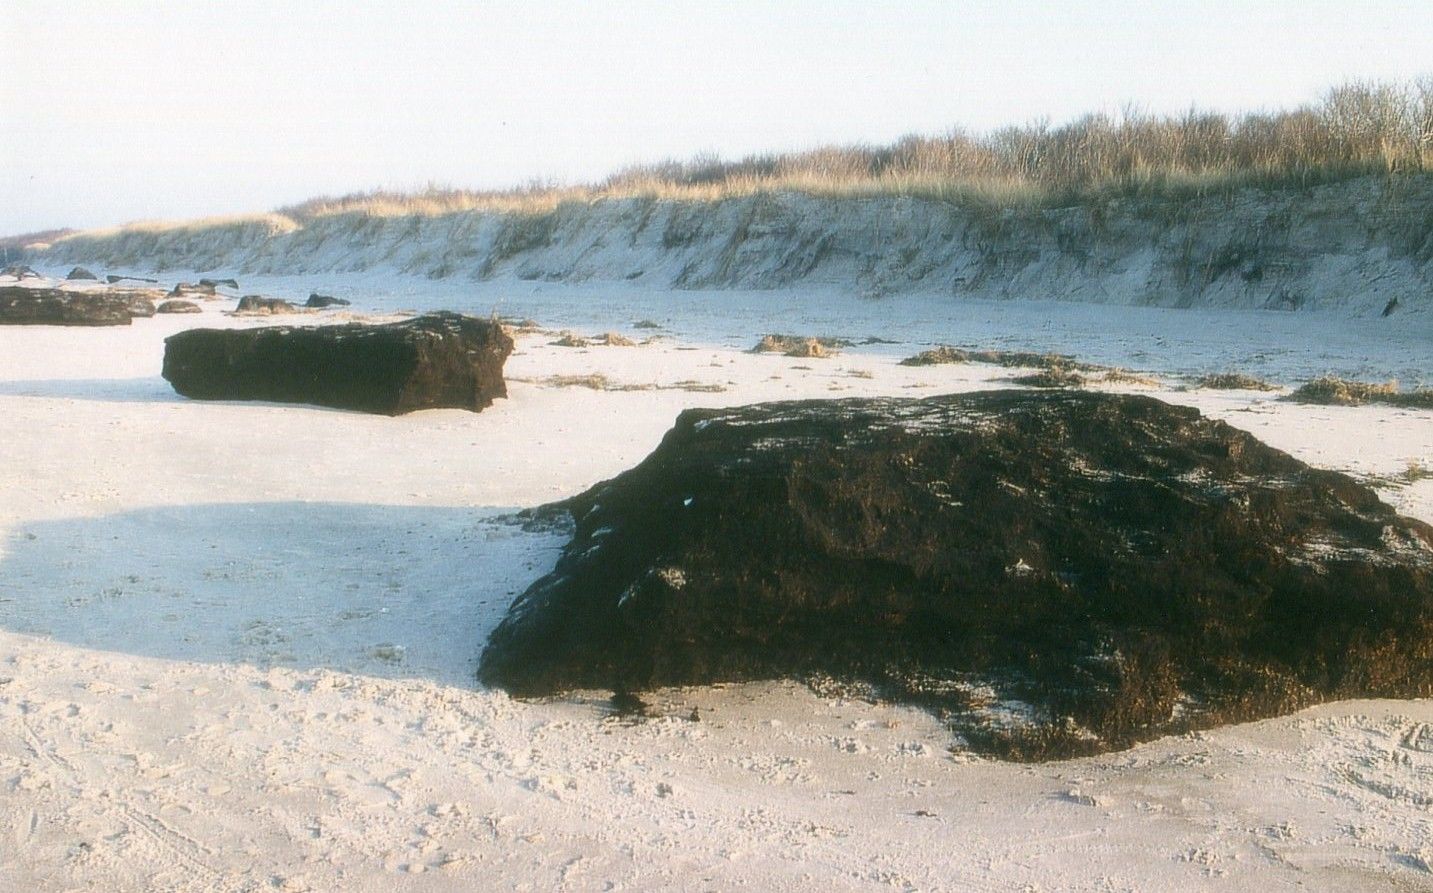 Bei heftigen Stürmen werden mächtige Torfblöcke aus dem Untergrund der Ostsee gerissen und an den Strand geworfen